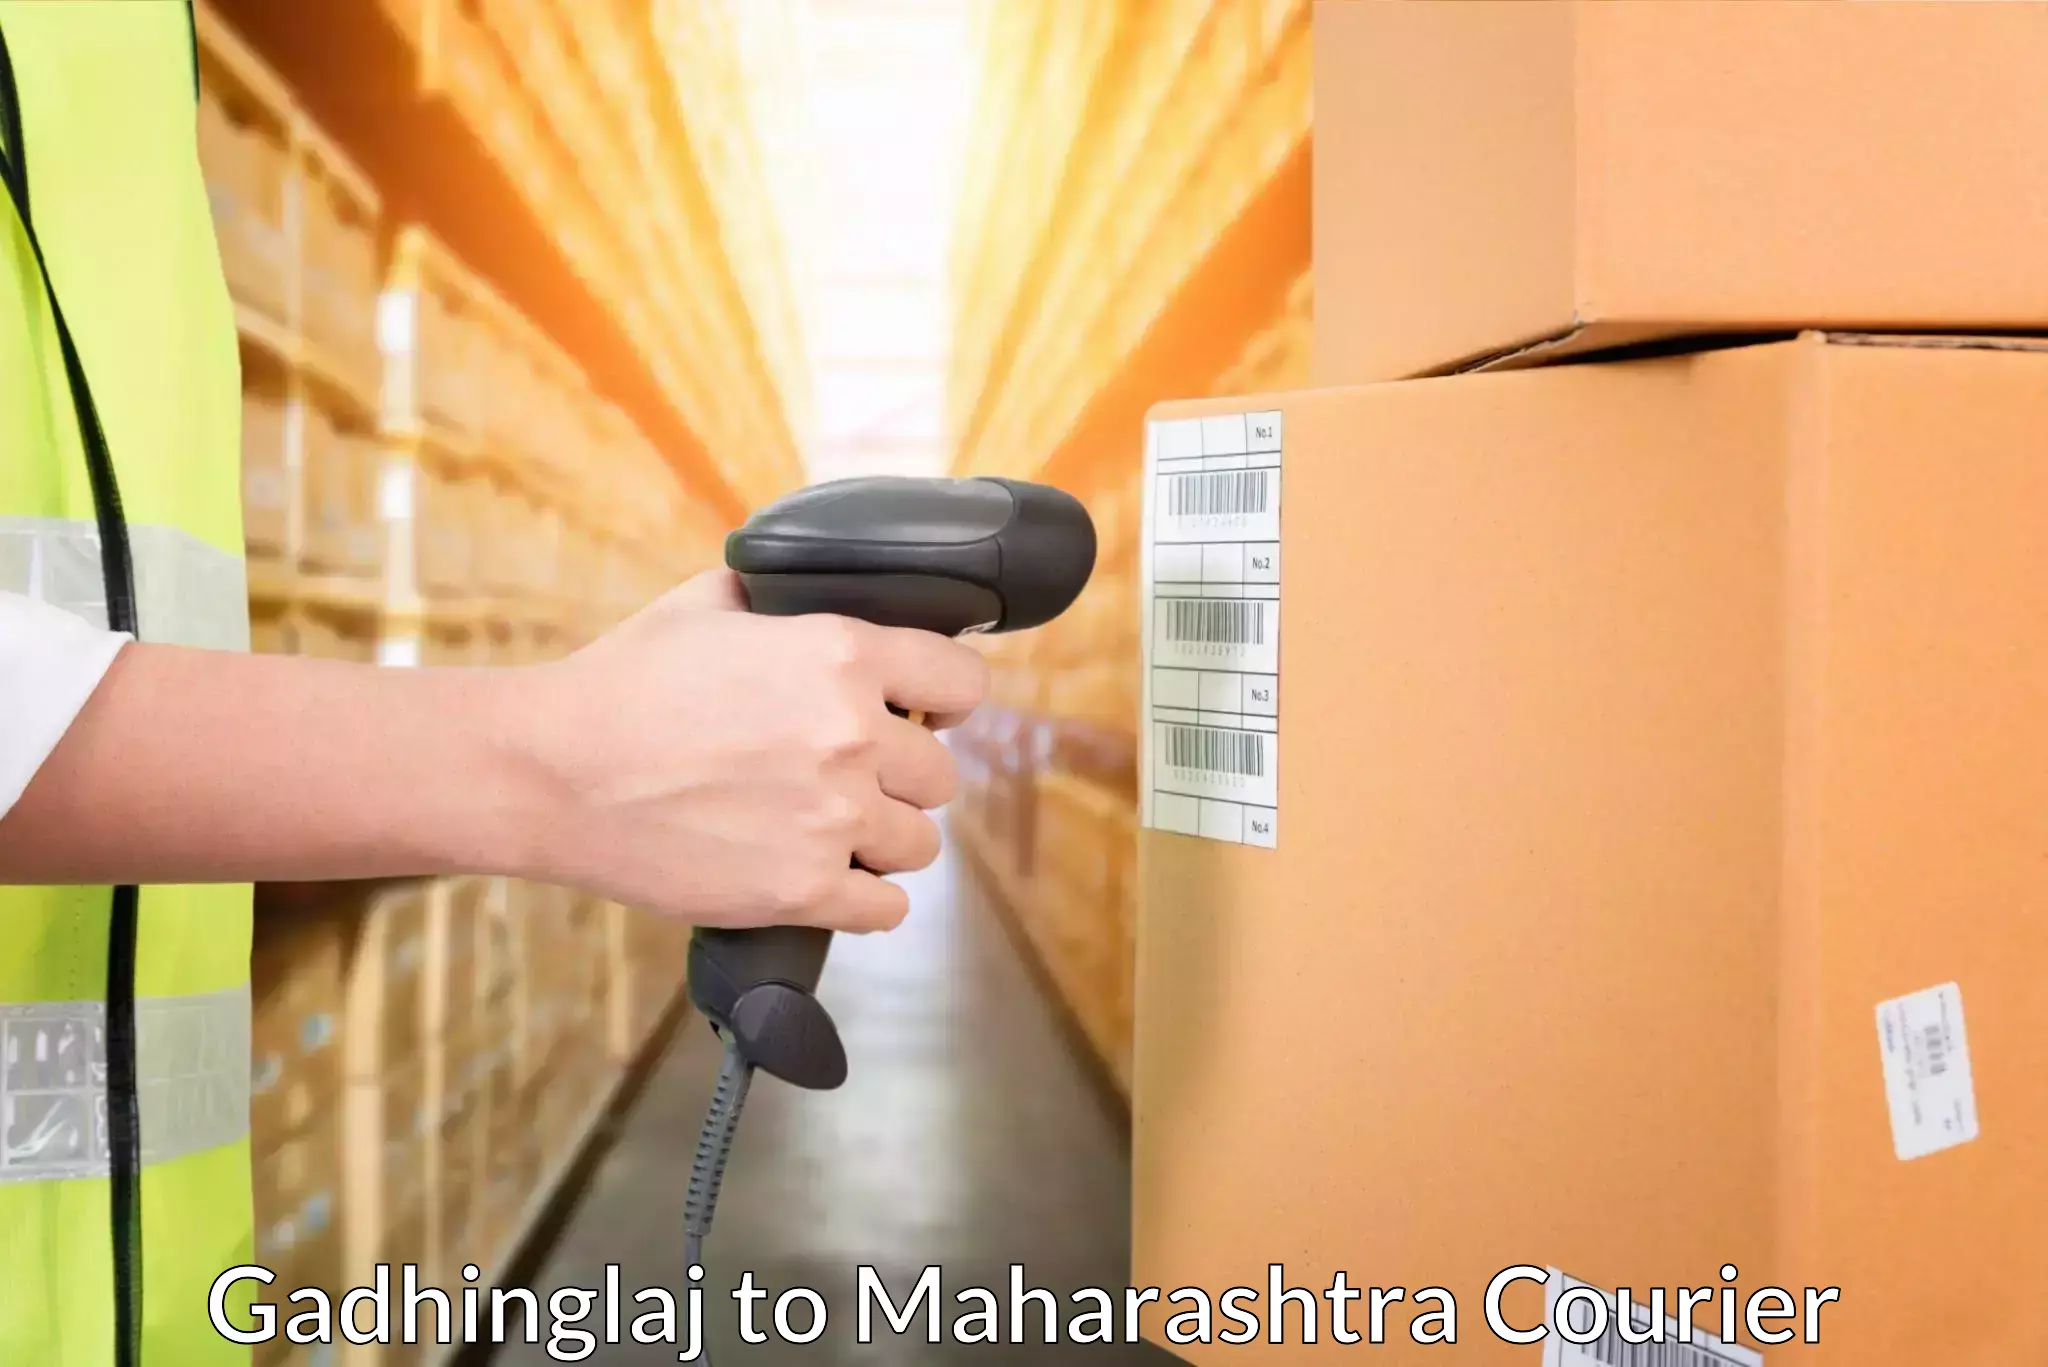 Flexible delivery schedules Gadhinglaj to Paithan